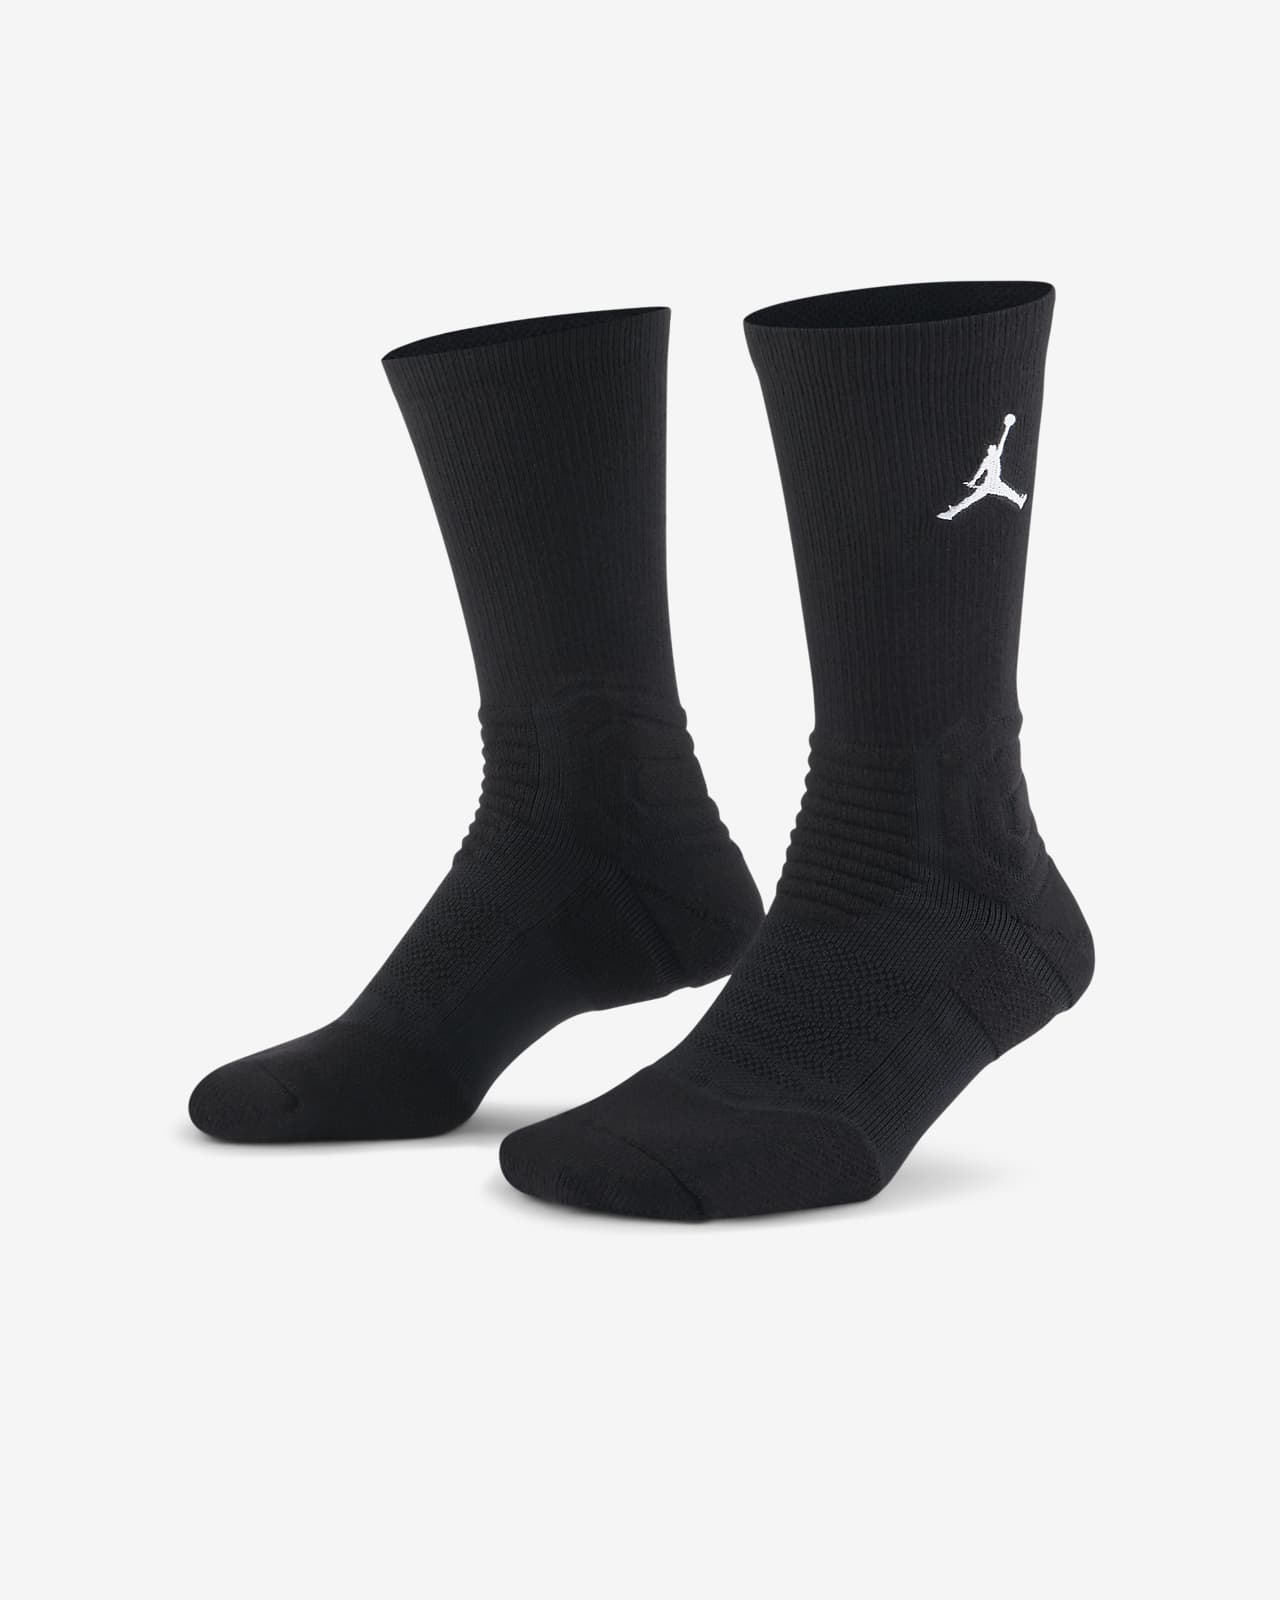 Lijkenhuis Werkloos Aan boord Jordan Flight Crew basketbalsokken. Nike NL